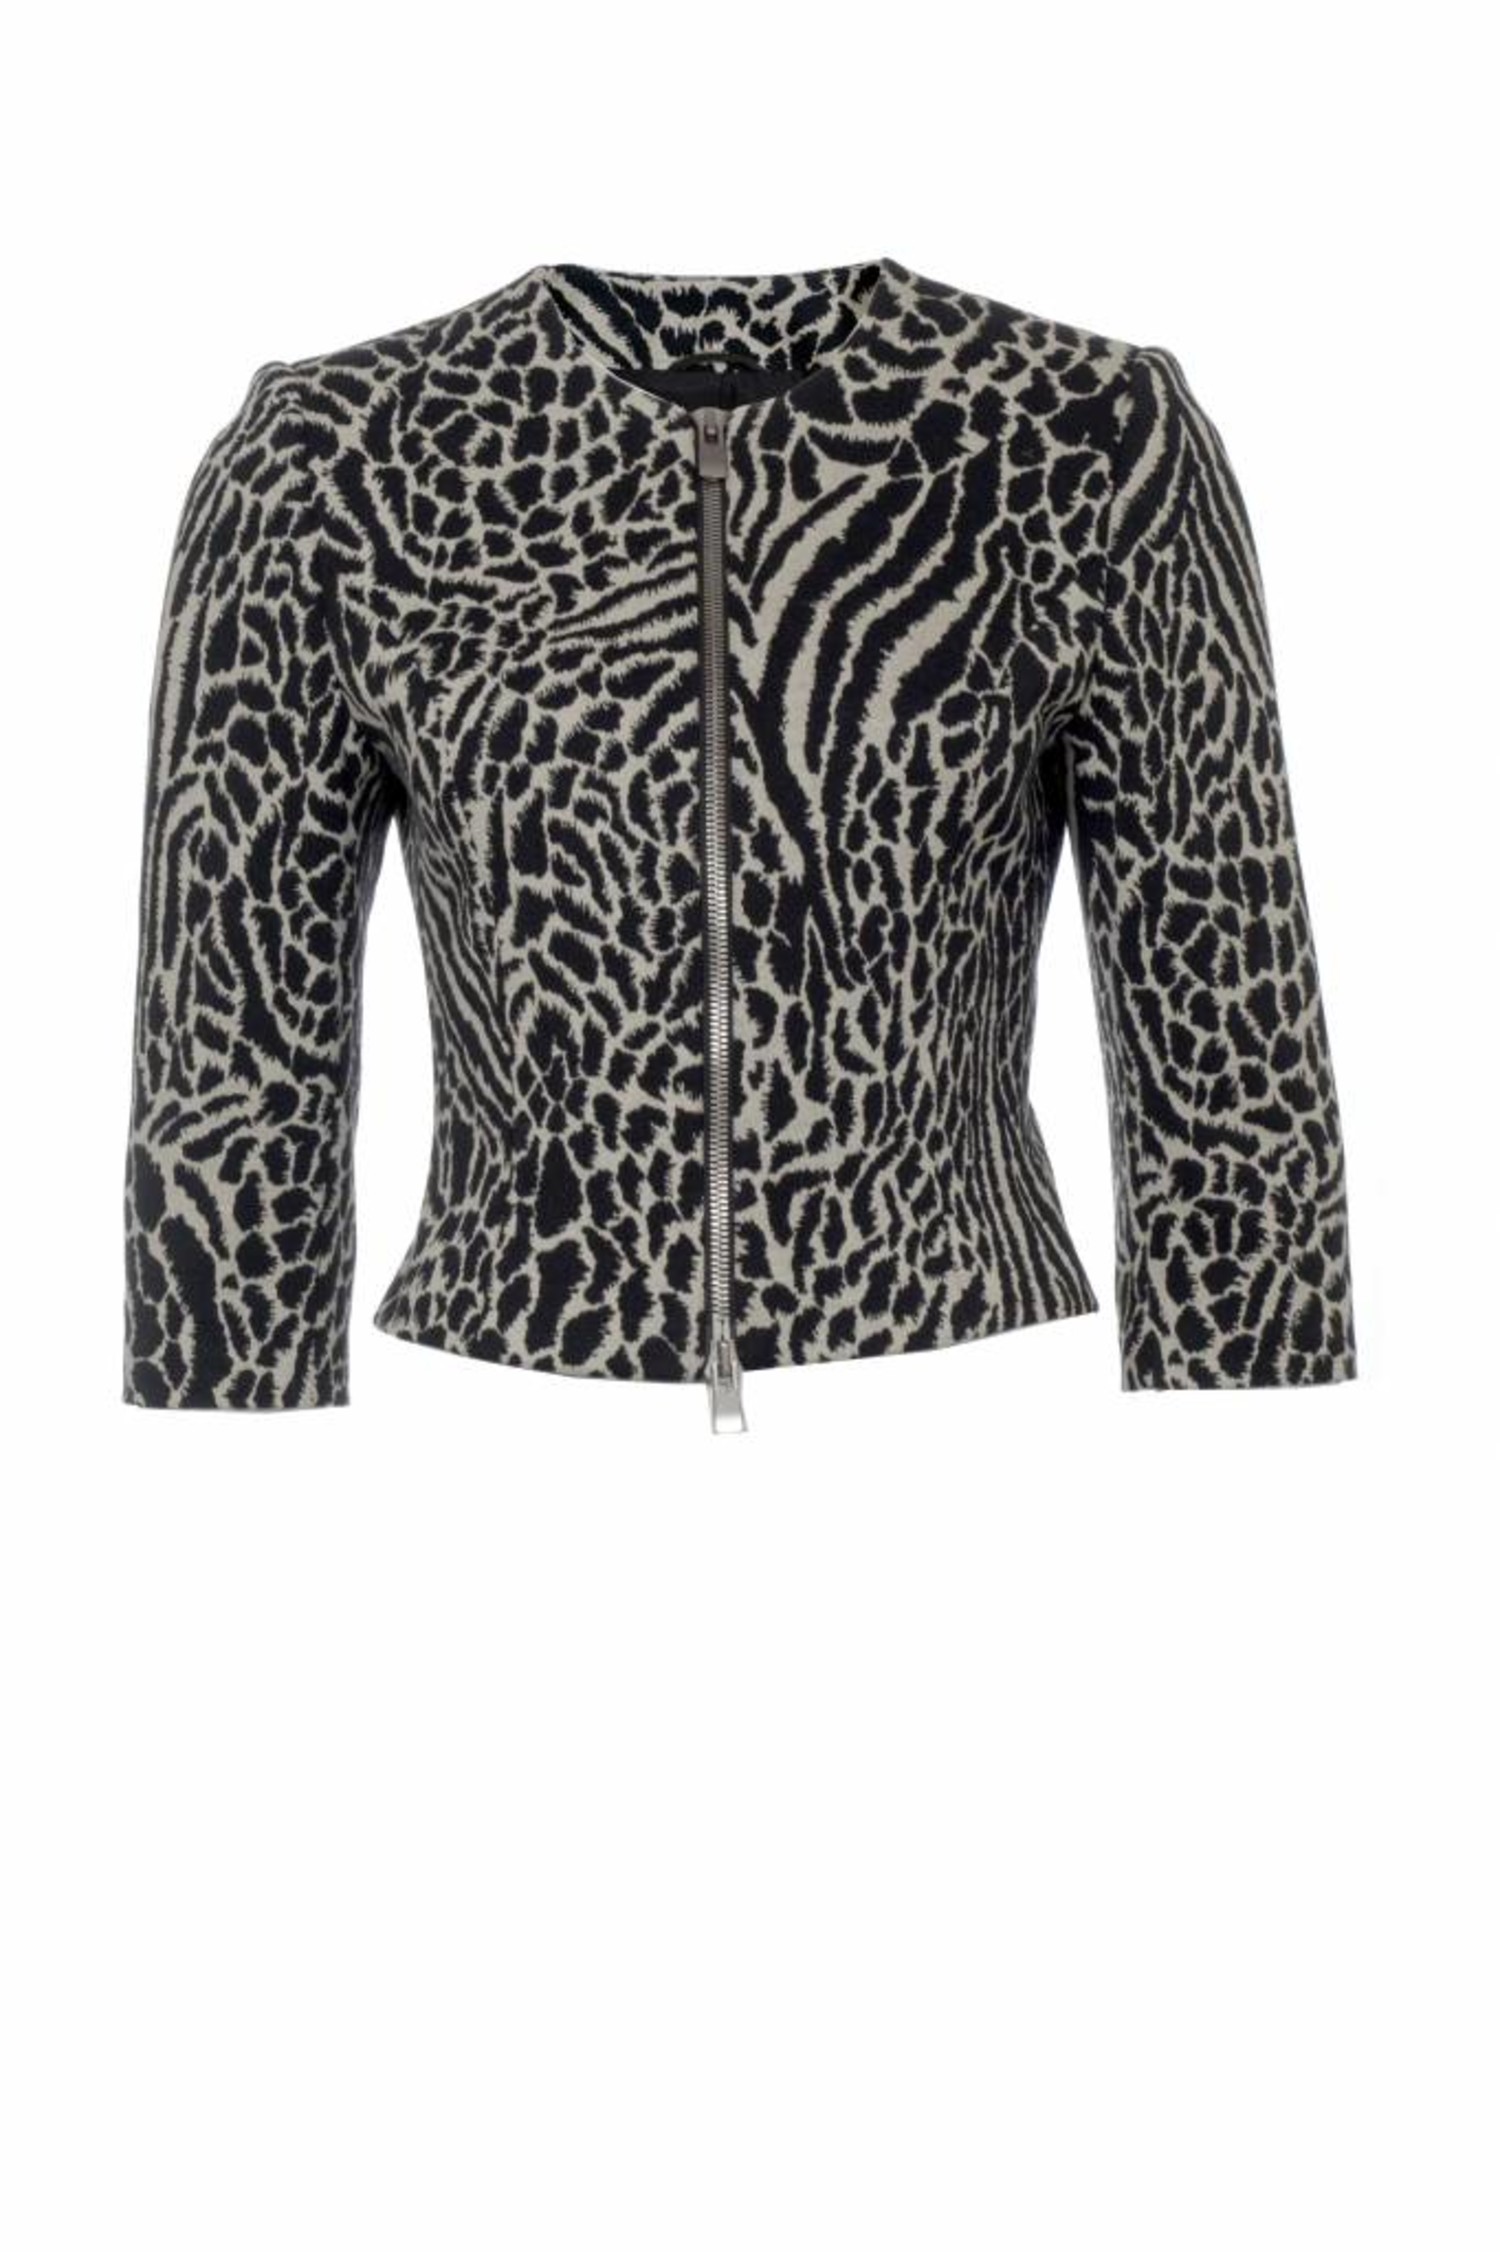 Staat Zichzelf helpen Wolford Wolford, bolero jasje in zwart/wit met luipaard print in maat S. -  Unique Designer Pieces